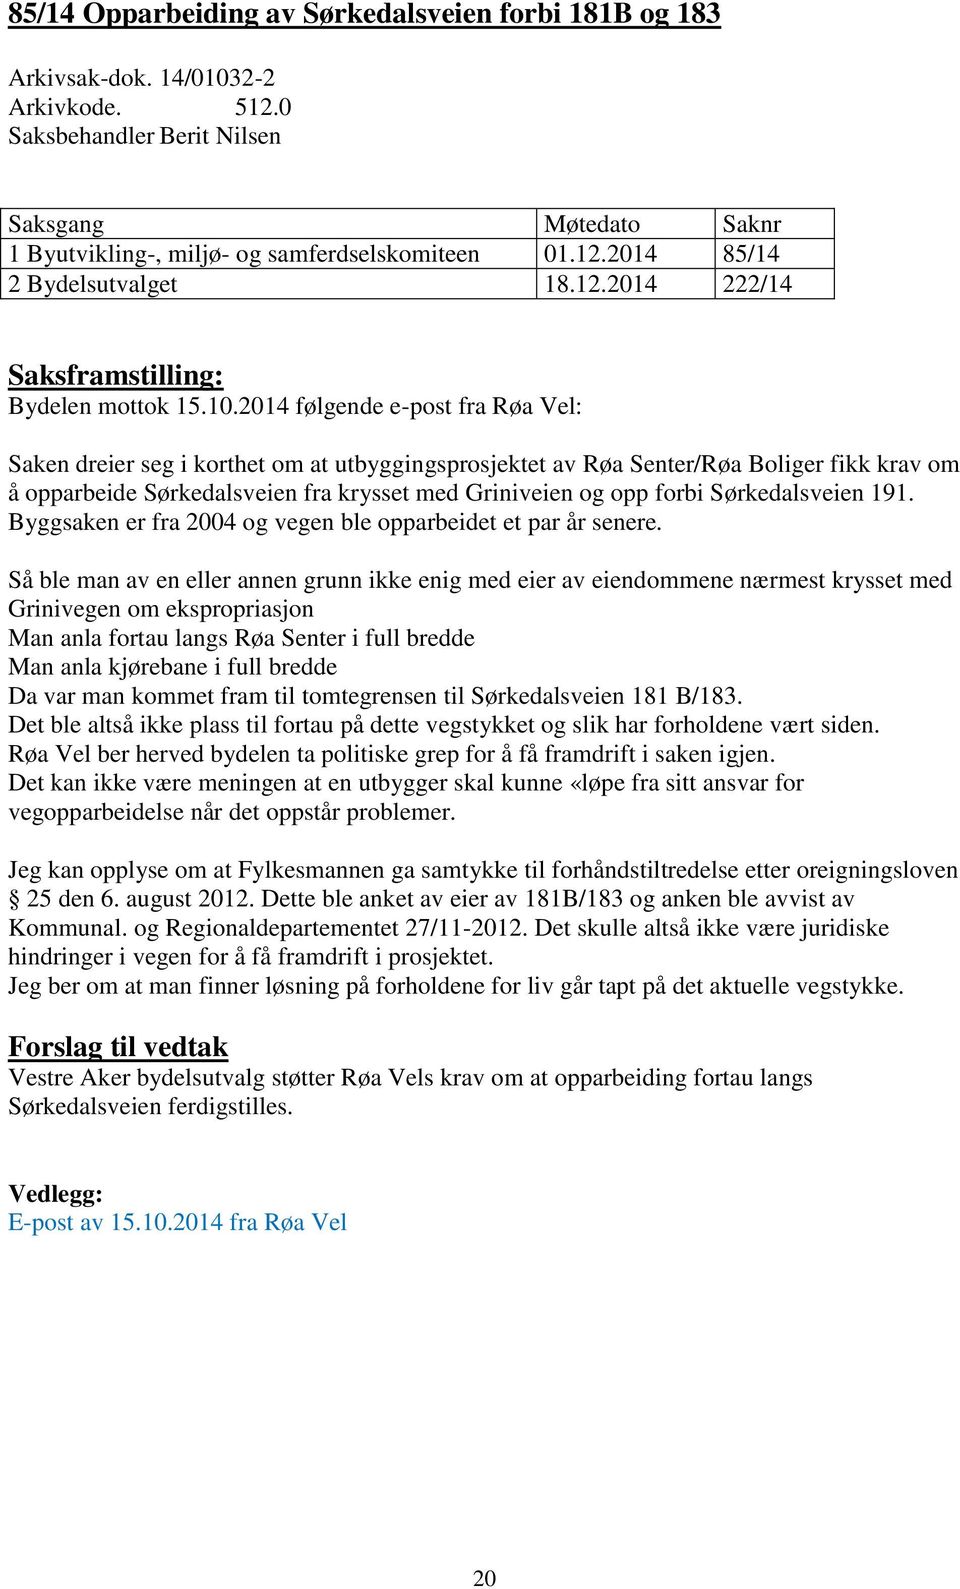 2014 følgende e-post fra Røa Vel: Saken dreier seg i korthet om at utbyggingsprosjektet av Røa Senter/Røa Boliger fikk krav om å opparbeide Sørkedalsveien fra krysset med Griniveien og opp forbi